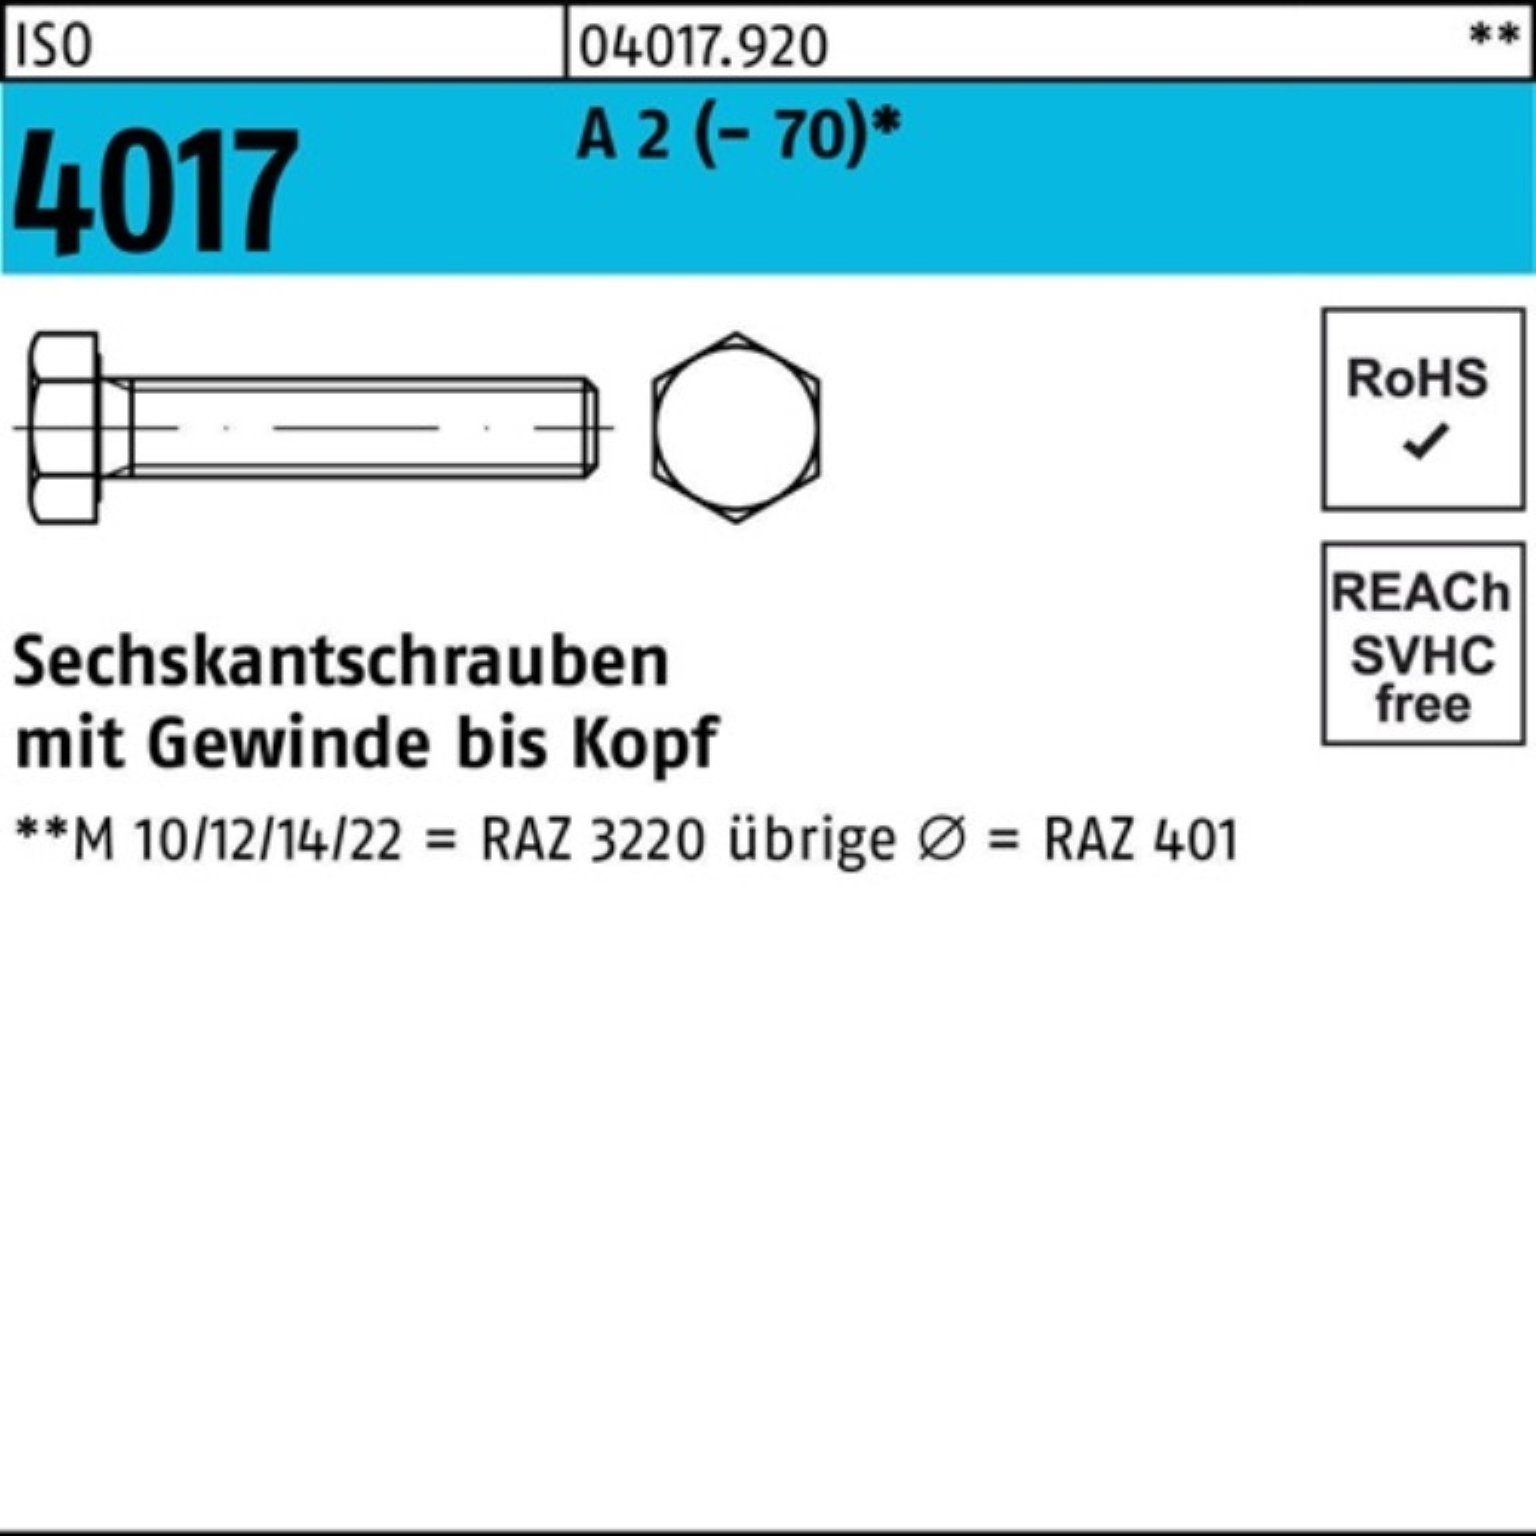 Bufab Sechskantschraube 100er Pack Sechskantschraube ISO 4017 VG M8x 160 A 2 (70) 50 Stück